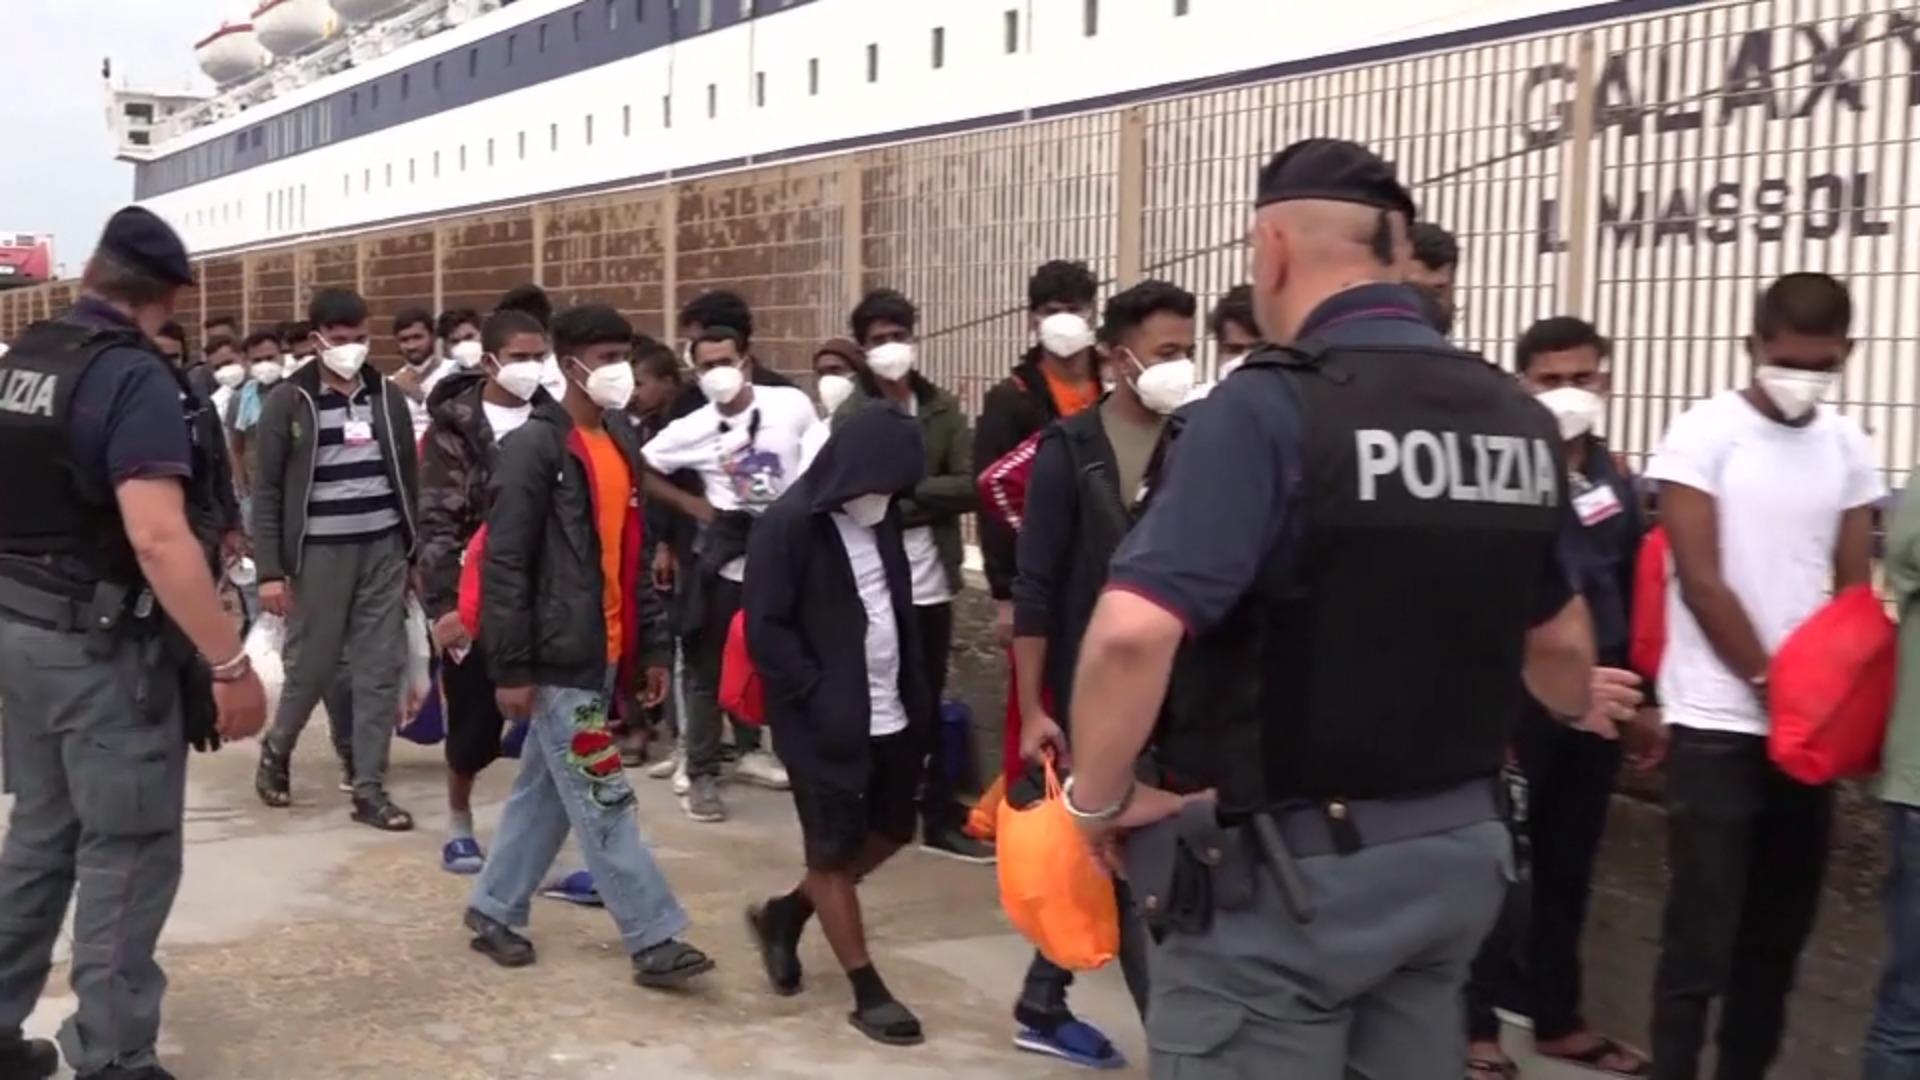 Schärfere Regeln für Asylverfahren sollen kommen EU einigt sich